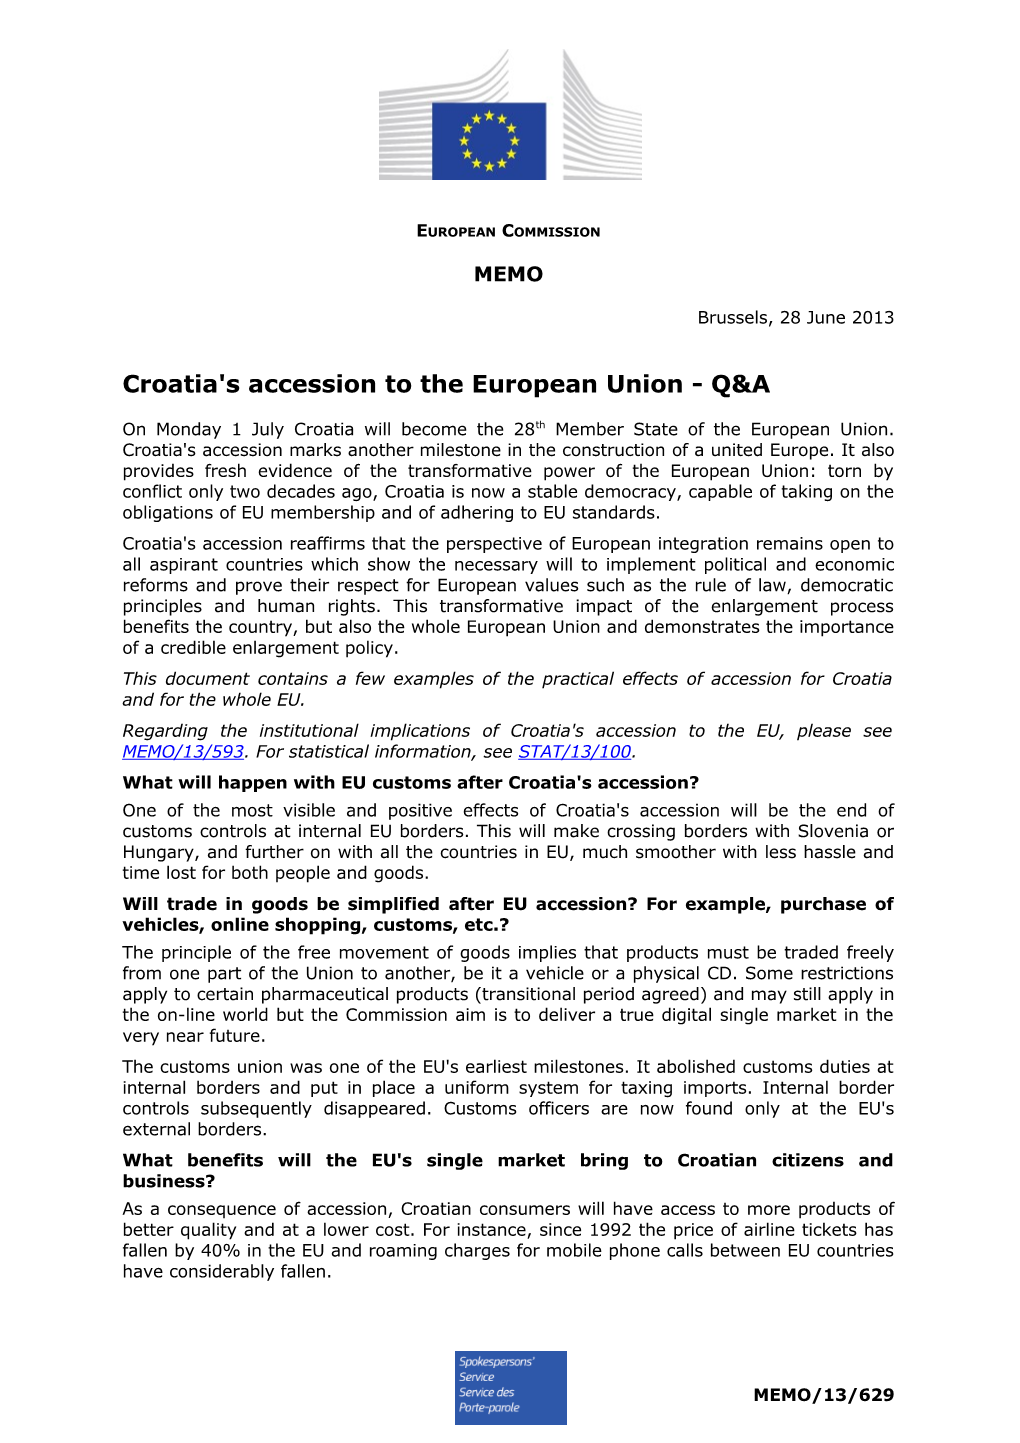 Croatia's Accession to the European Union - Q&A